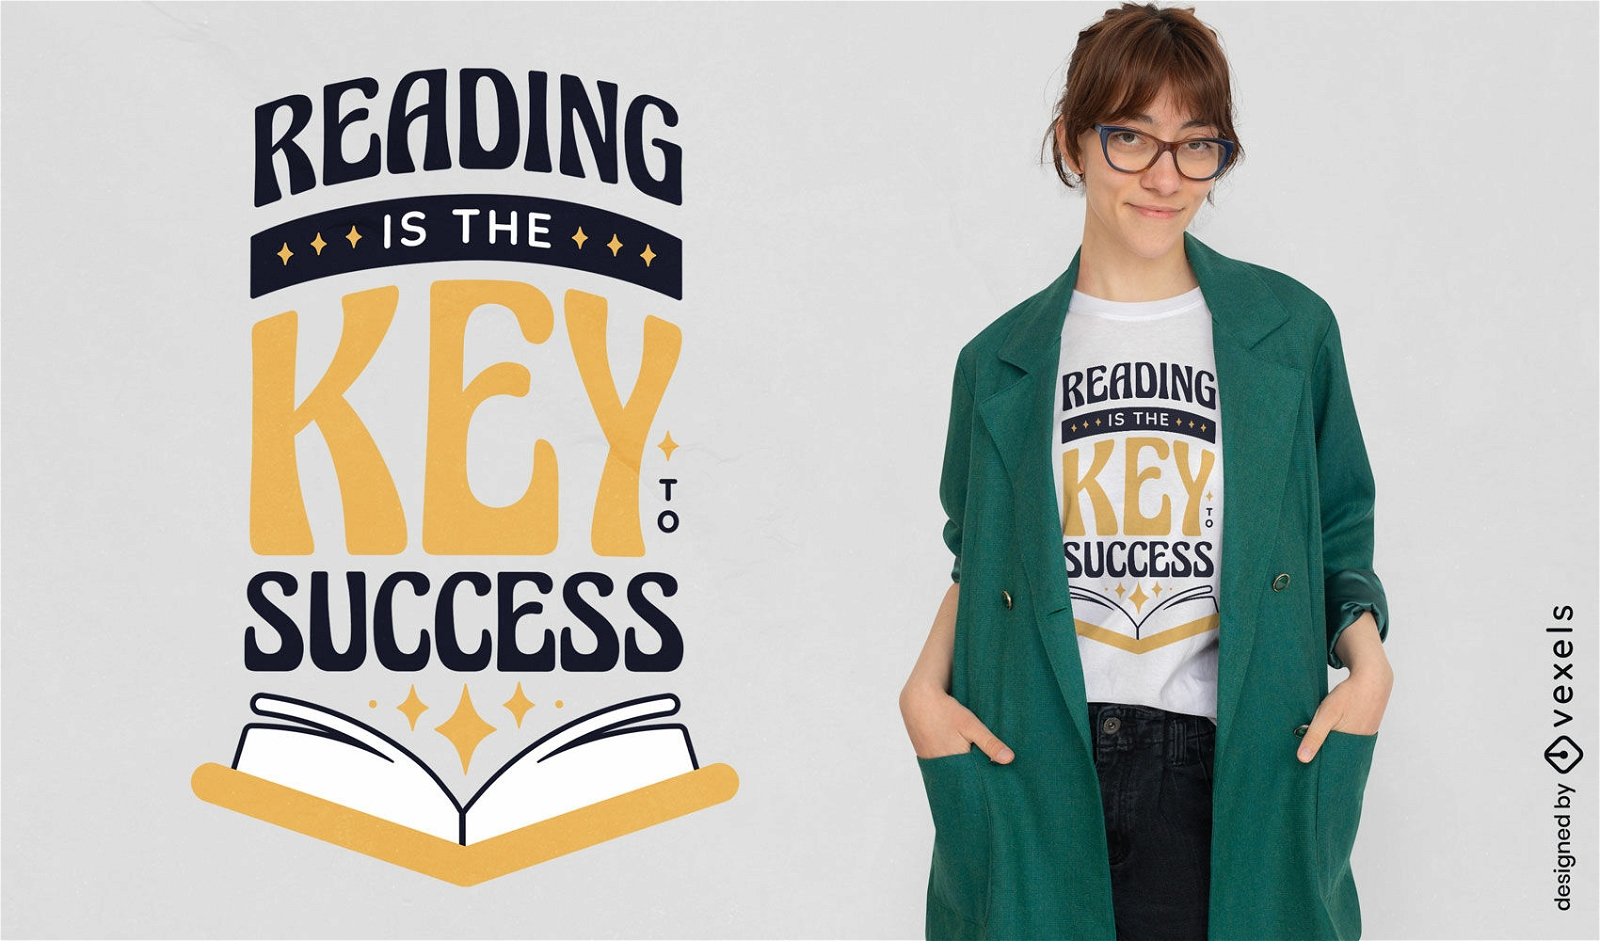 Lectura clave para el diseño de camisetas de éxito.